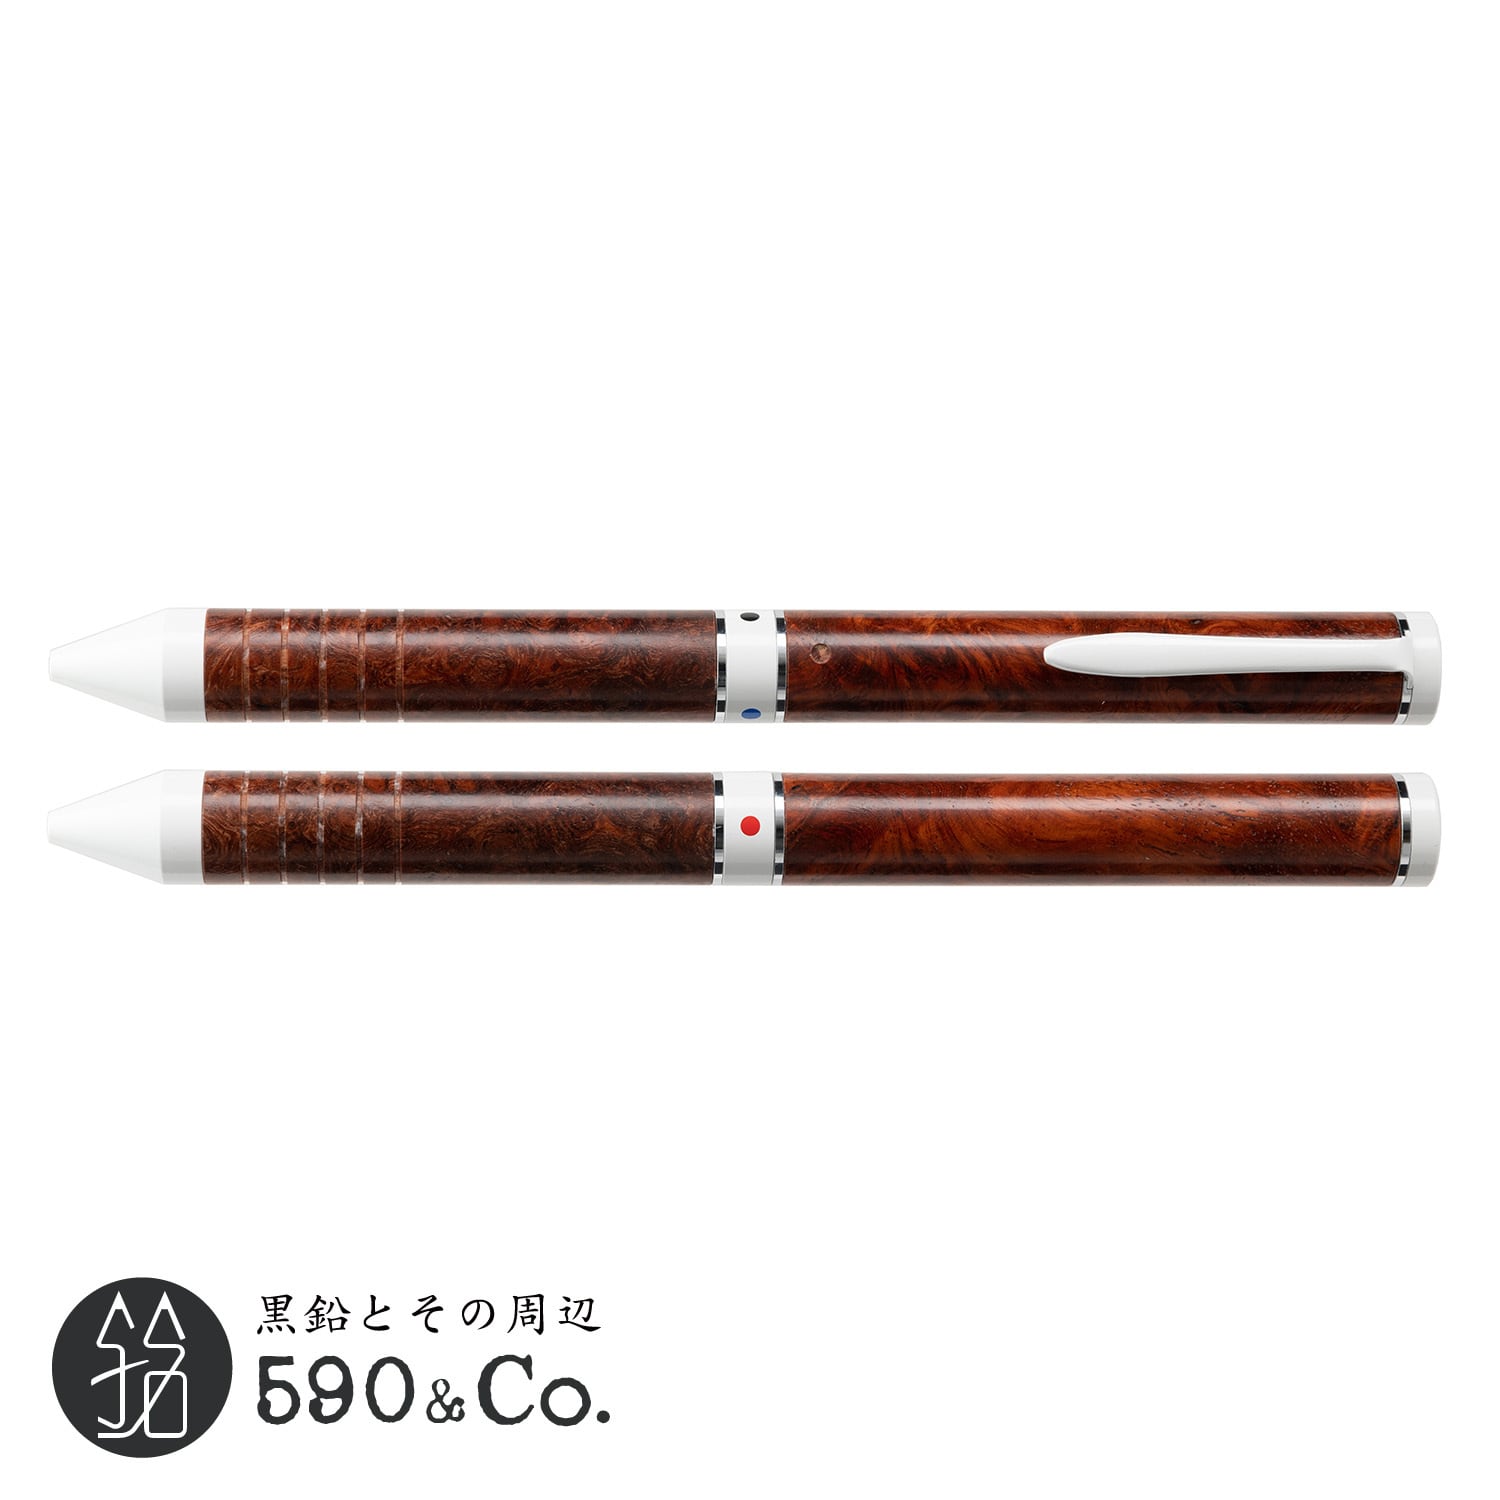 【マーベラスウッド】トライカラーボールペン (本花梨瘤) | 590&Co.